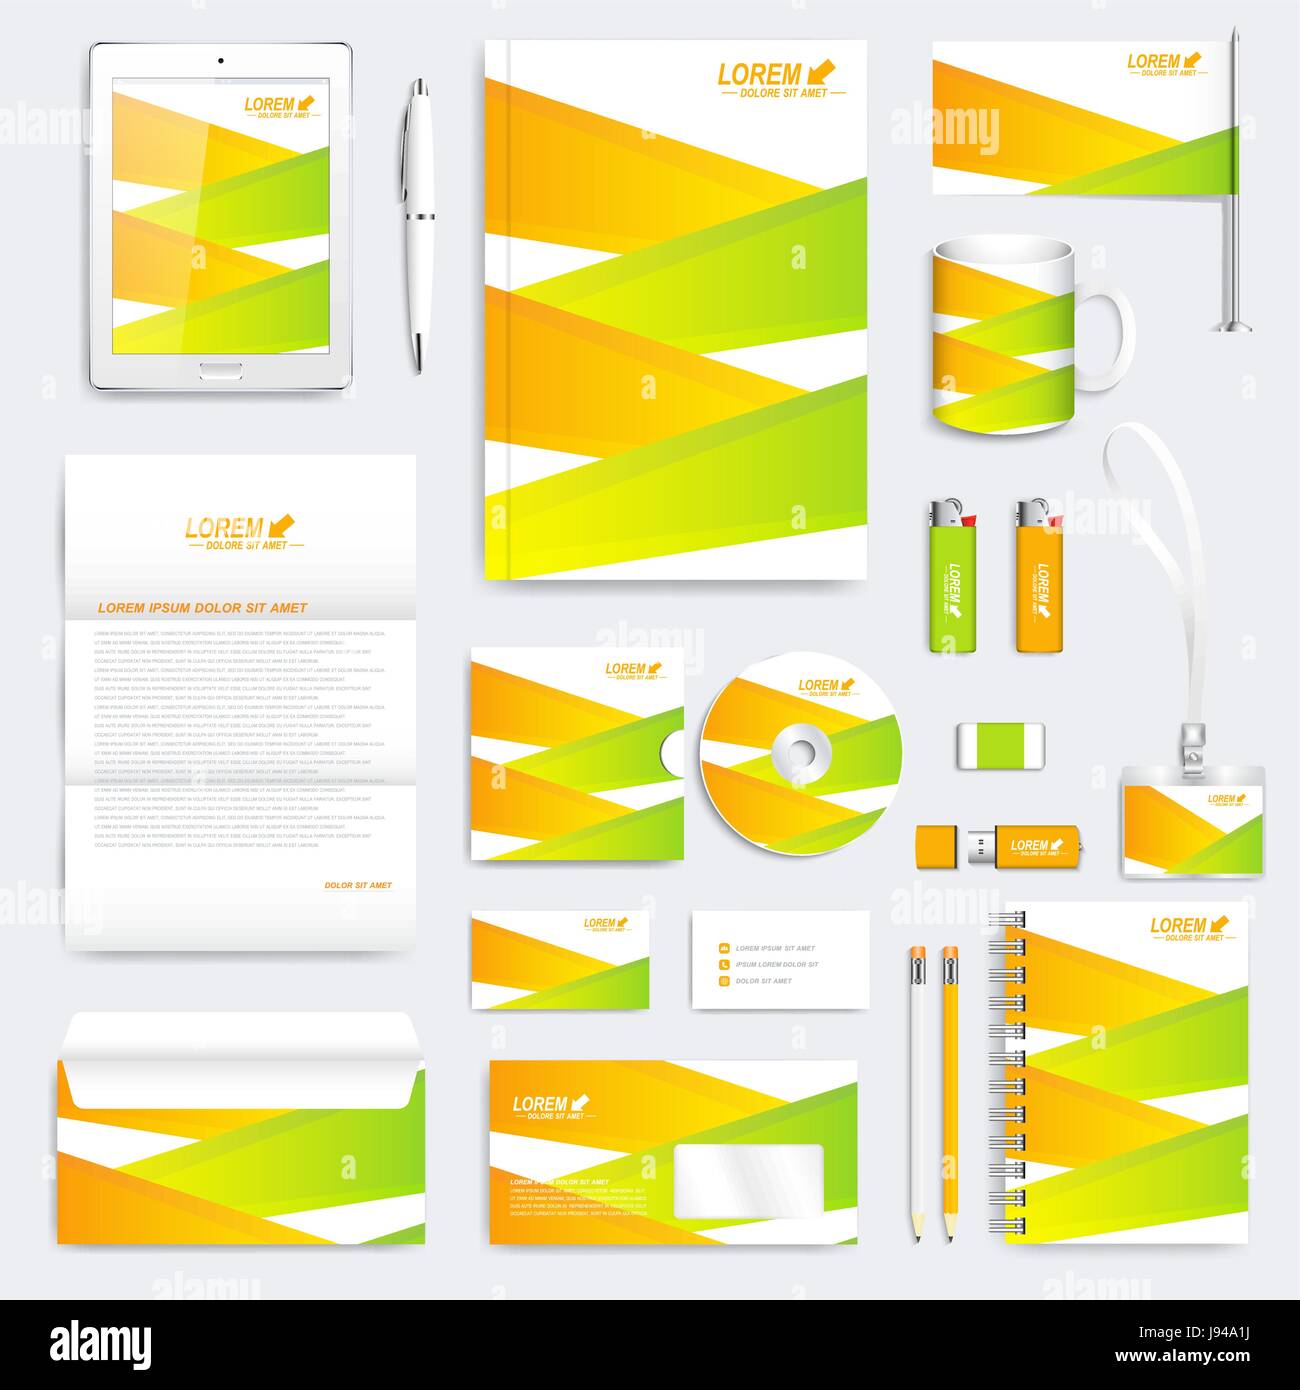 Coloratissima serie geometrica del vettore corporate identity modello. Moderno business stationery mock-up. Branding design con verde e gialla. Illustrazione Vettoriale